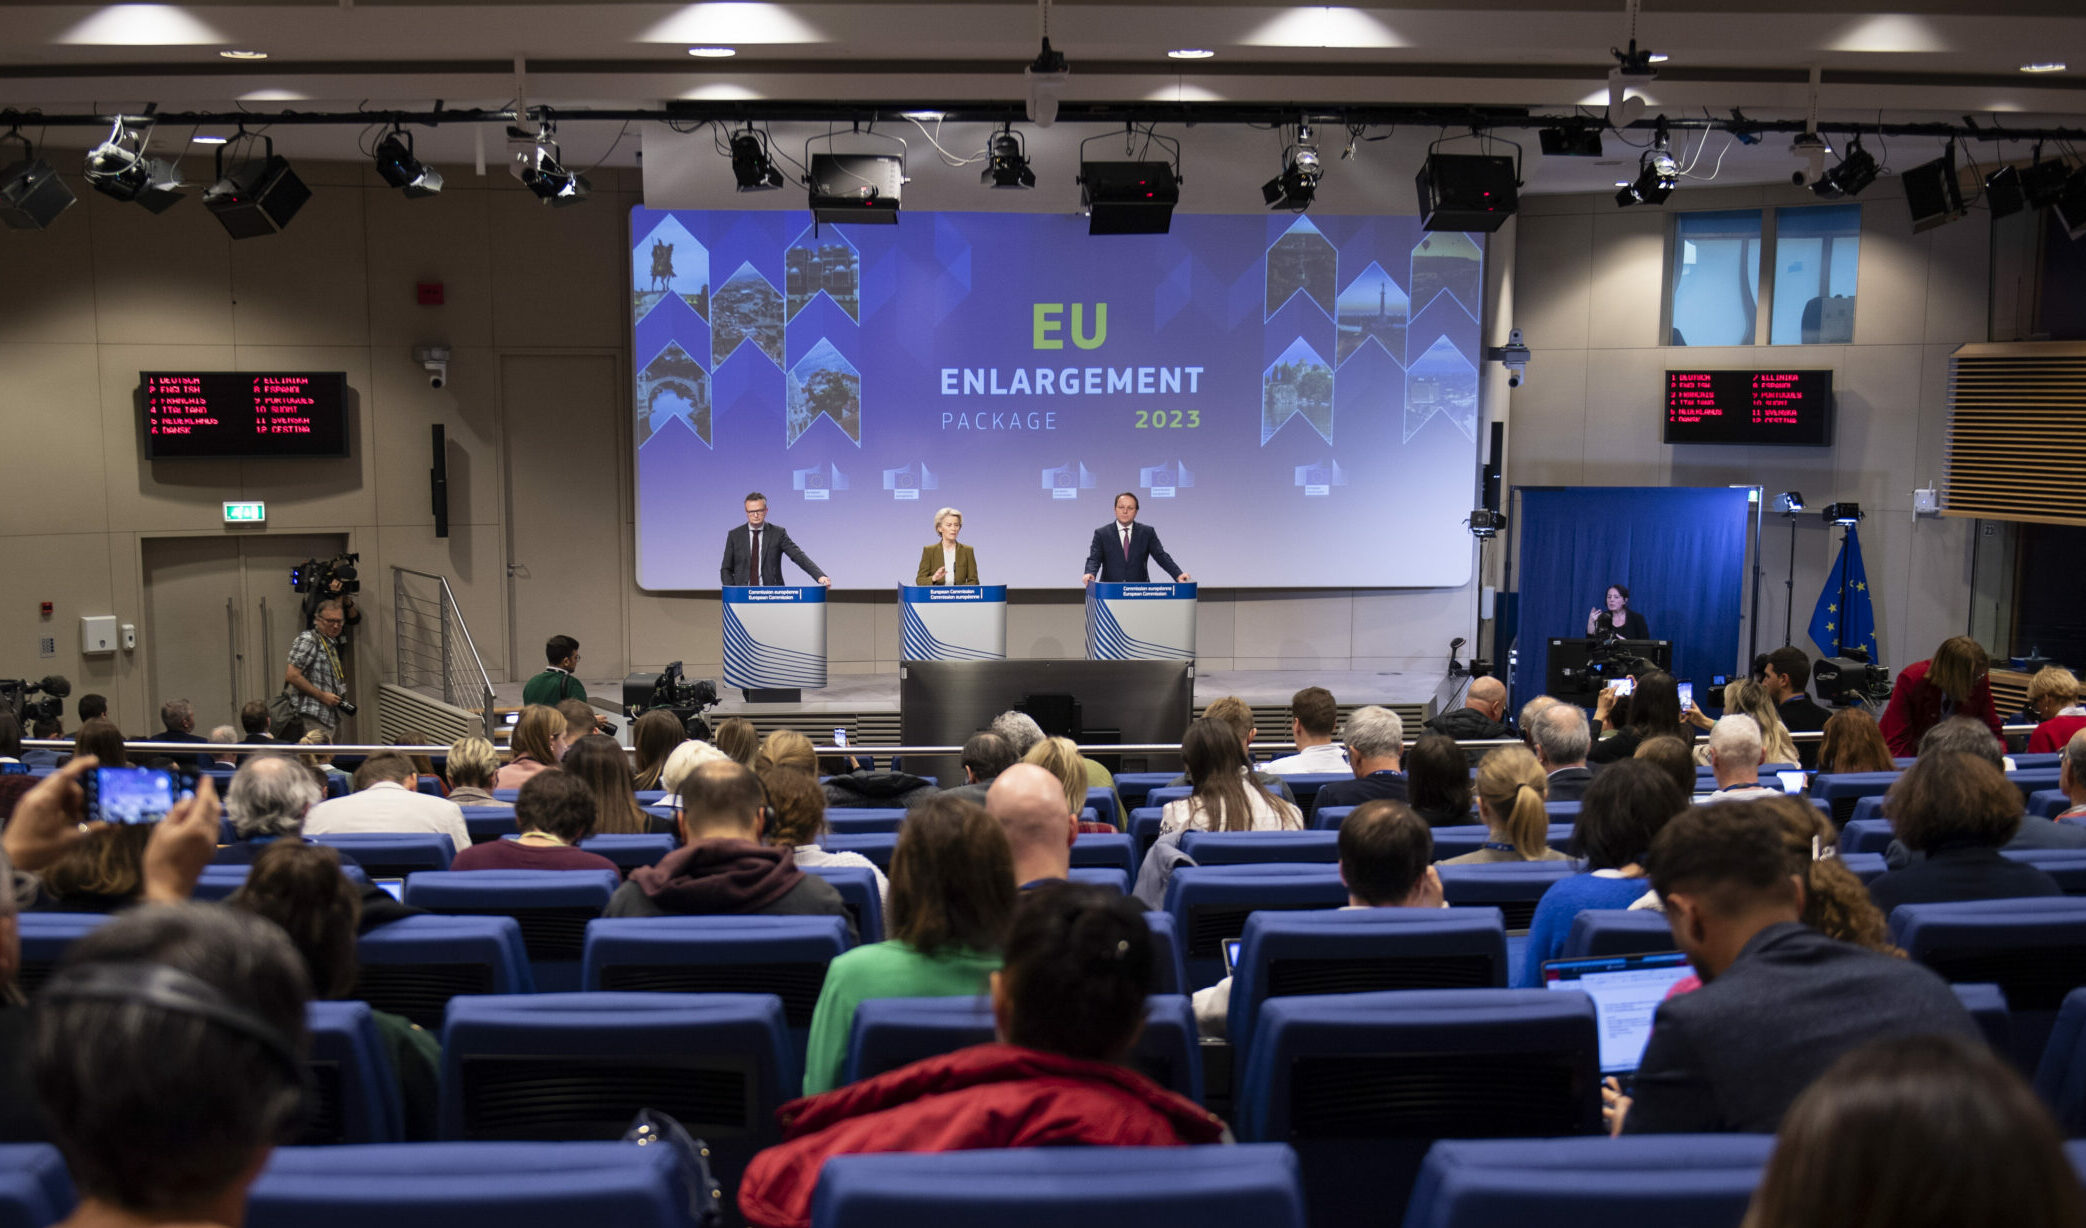 Přečtete si více ze článku Evropská komise vydala zprávu o rozšíření EU, doporučila začít jednání o vstupu do EU s Moldavskem a Ukrajinou